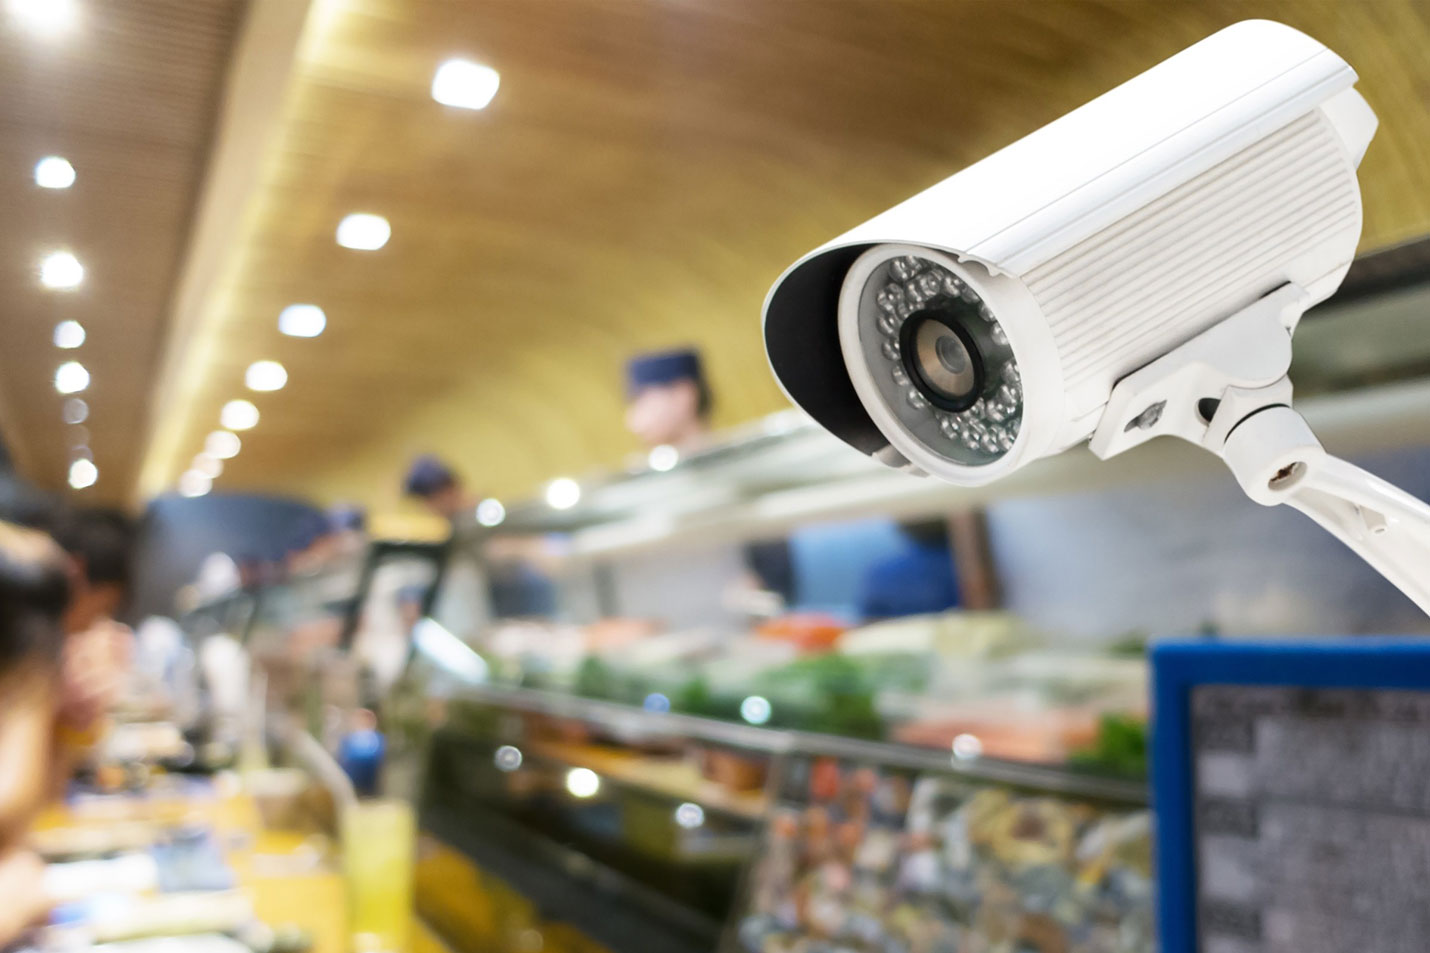 Как контролировать кассу с помощью камеры слежения?